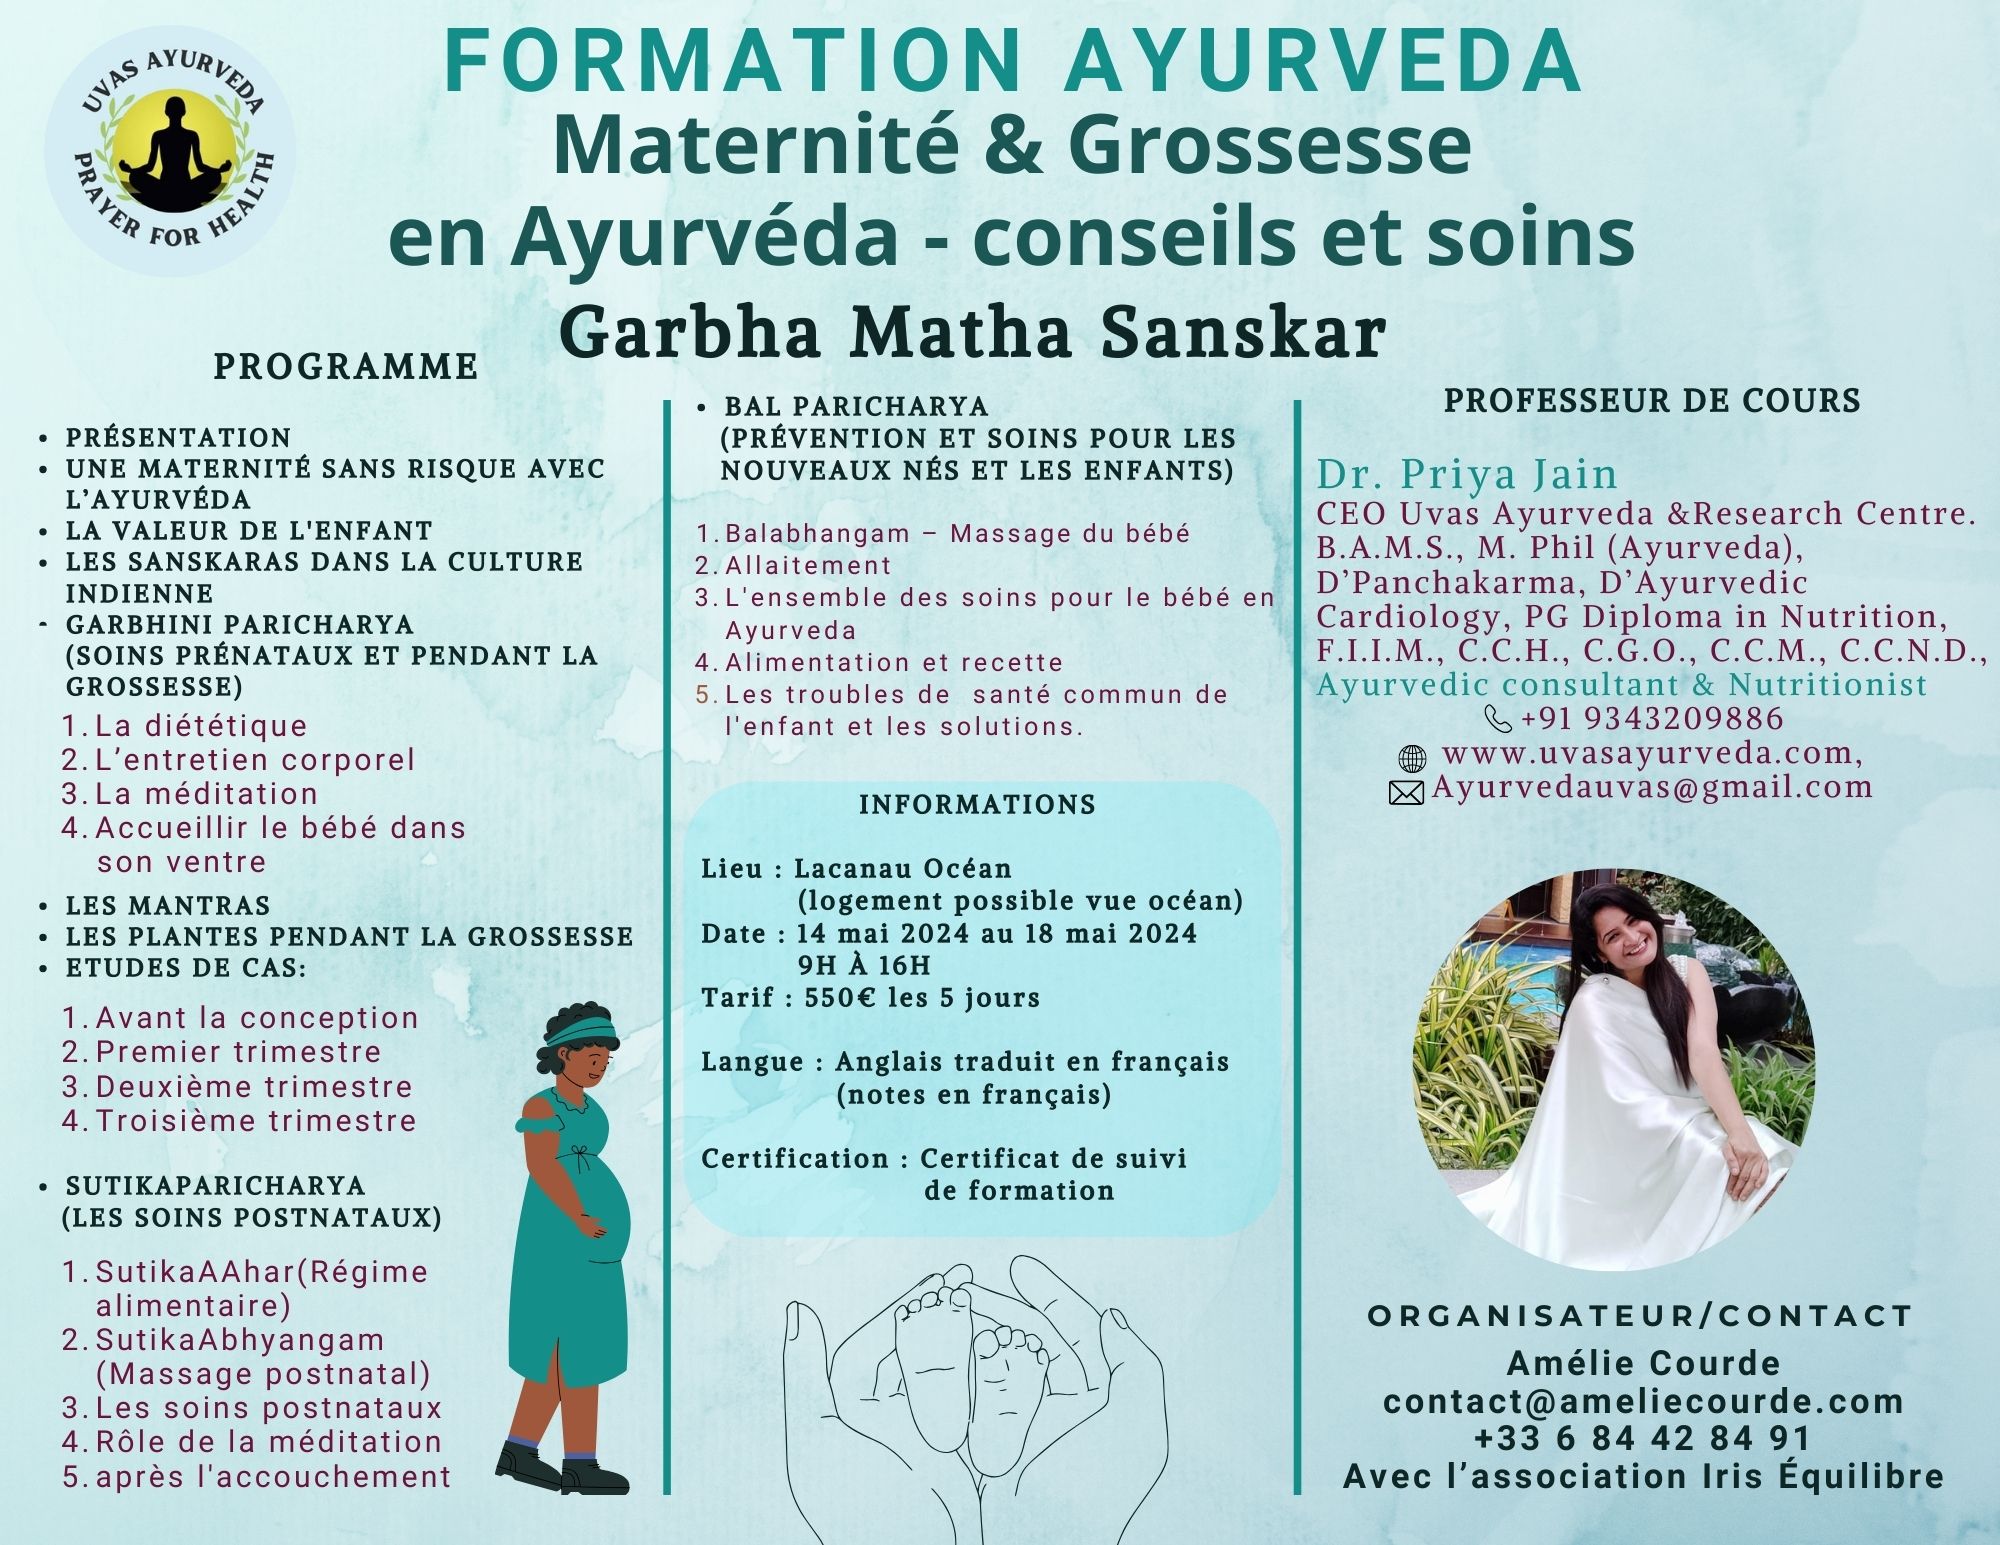 Formation en Ayurveda: conseil et soins autour de la grossesse et maternité sur inscription